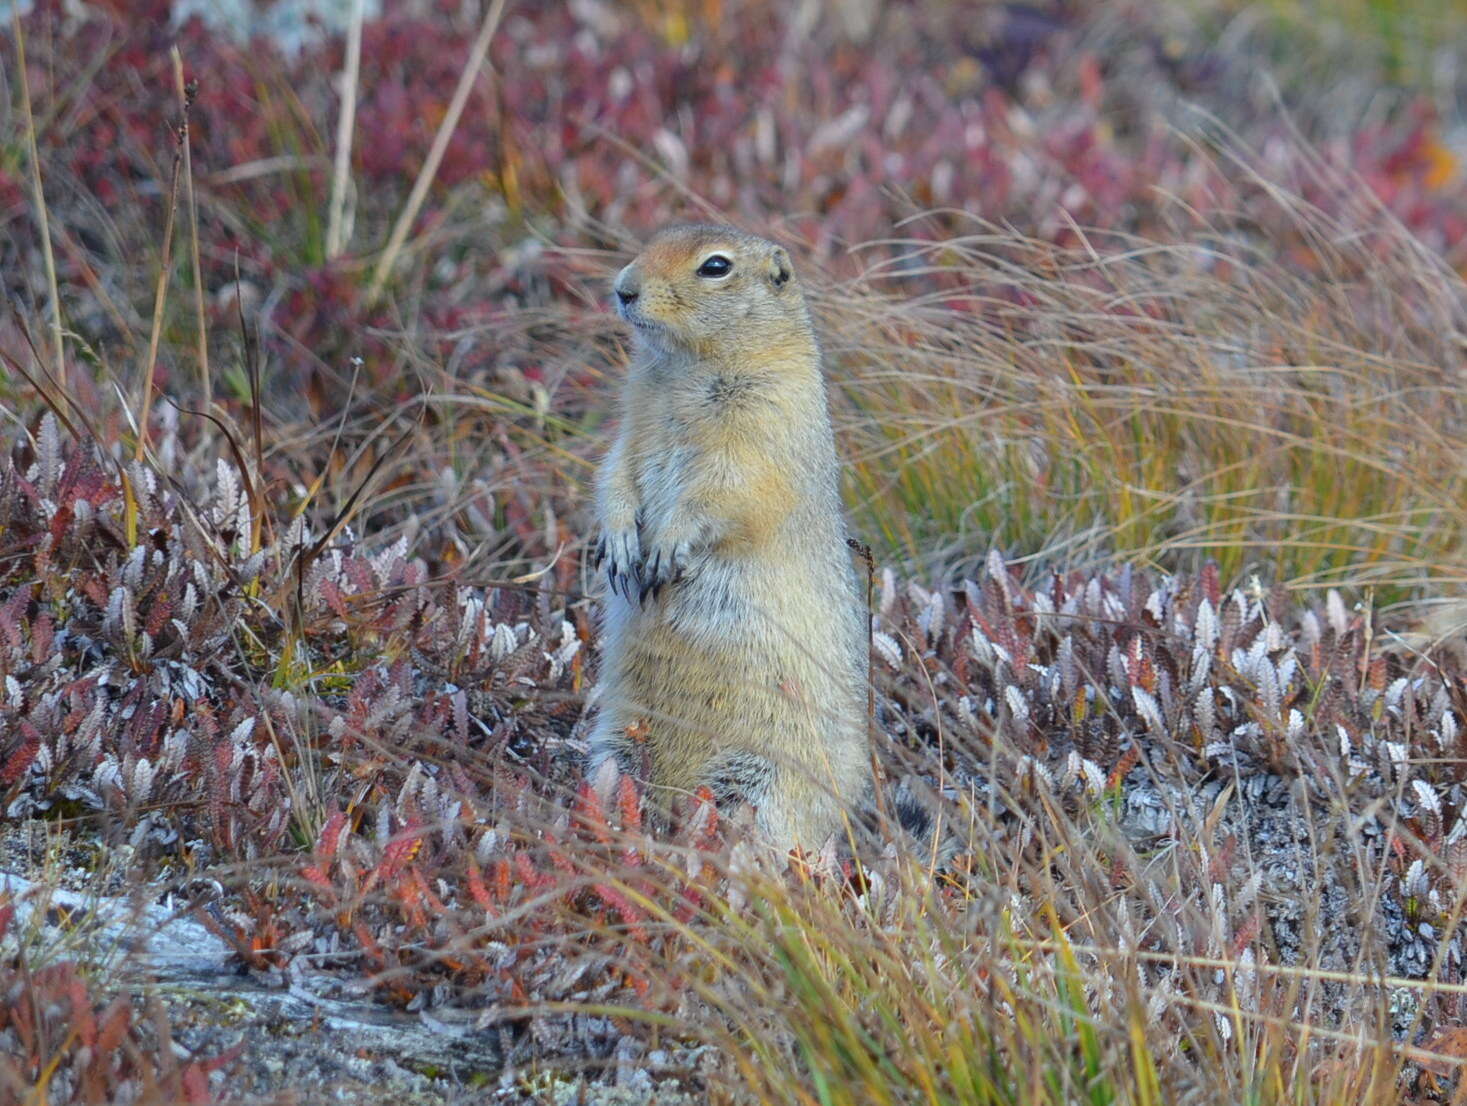 Image of Arctic ground squirrel